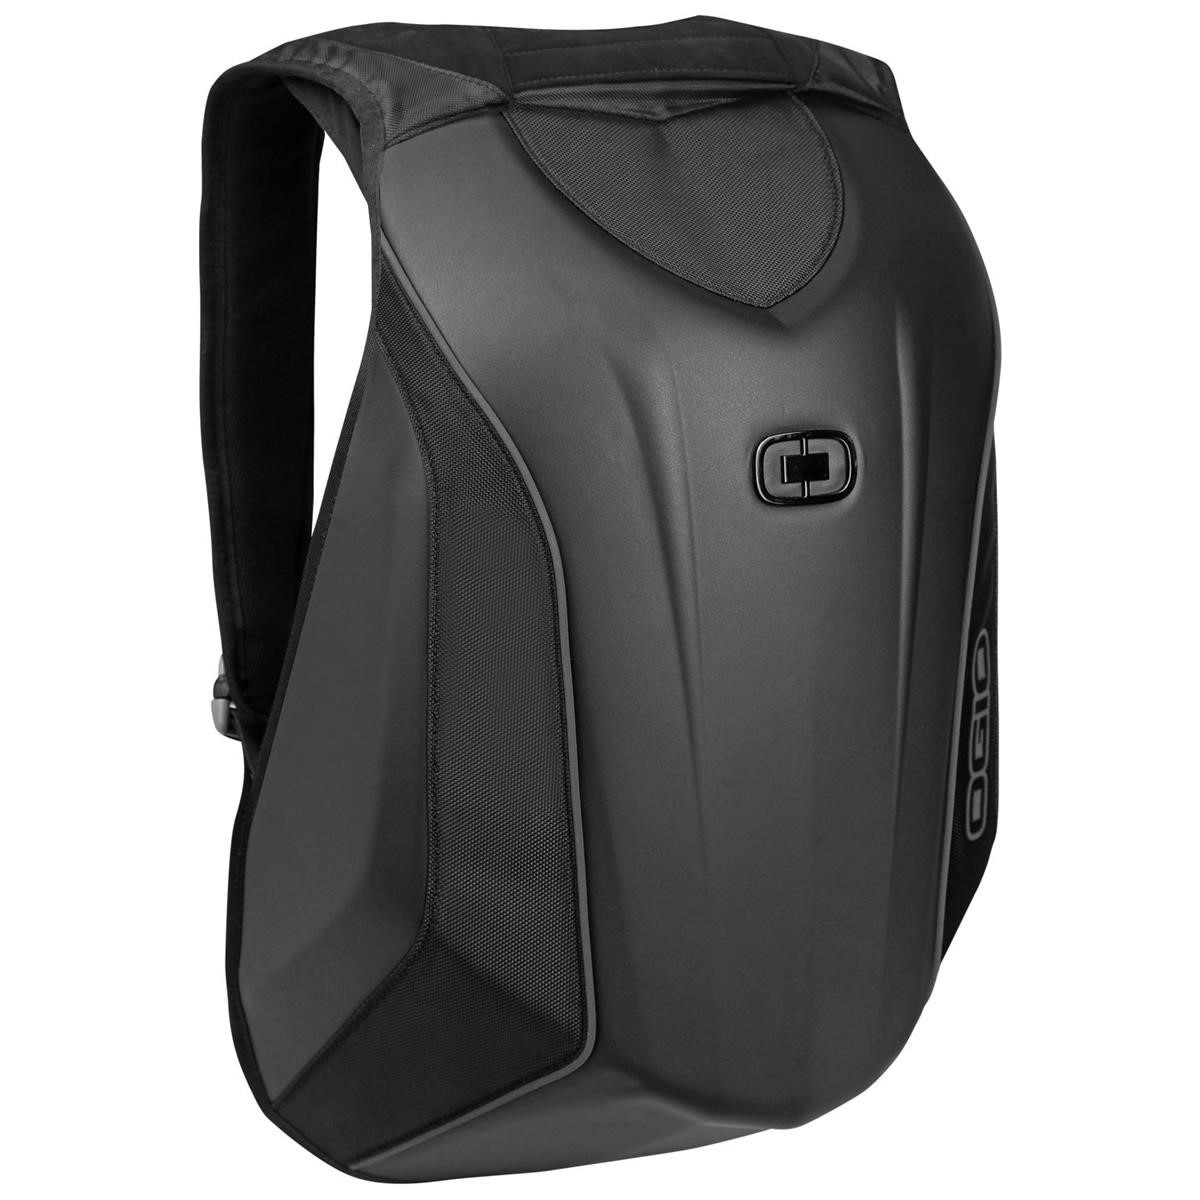 Ogio Backpack No Drag Mach 3 Black, 22 Liter